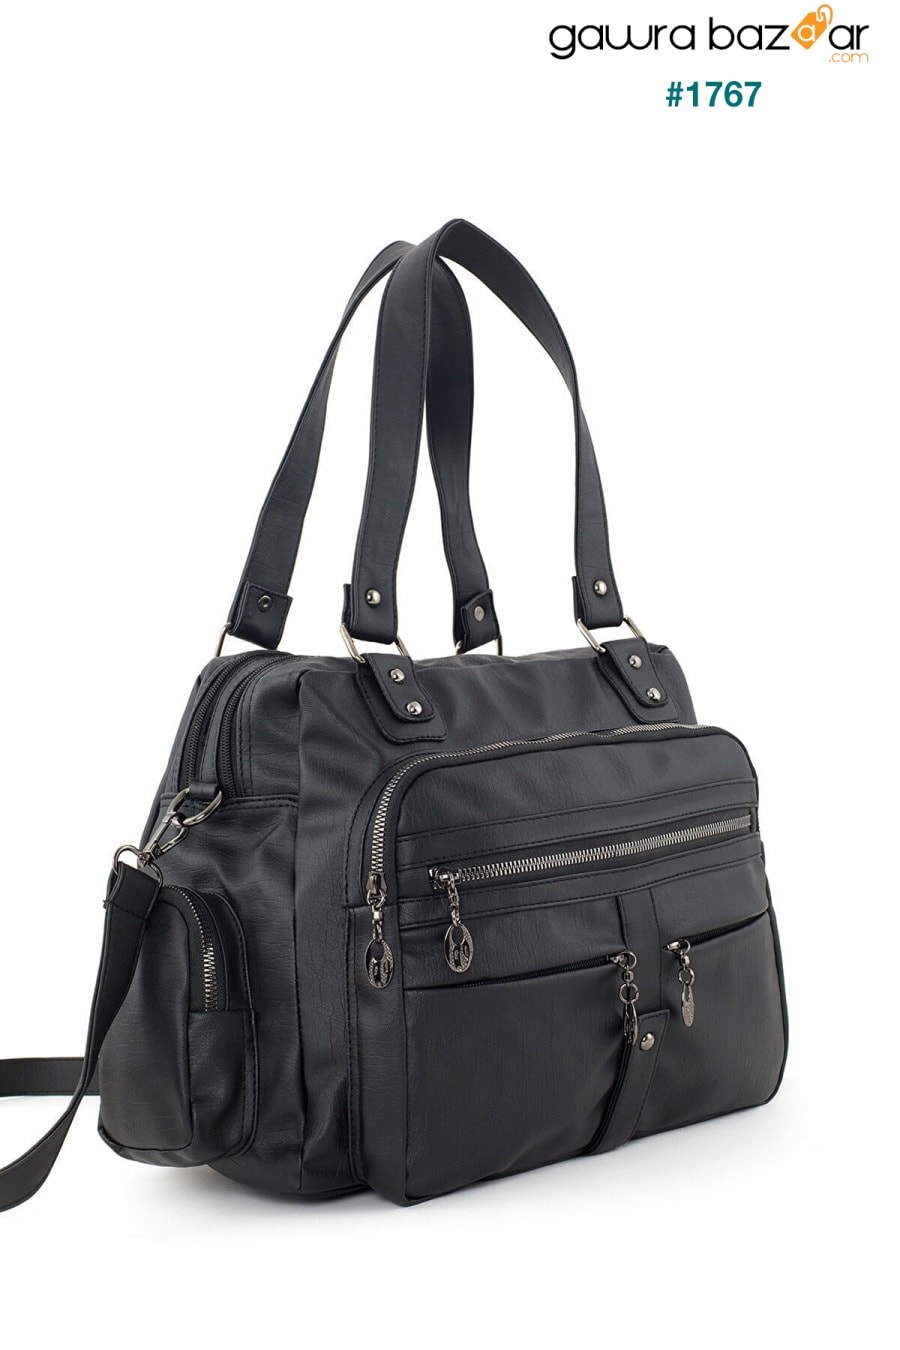 Frappe Bag للسيدات حقيبة كتف متعددة الأقسام من الجلد باللون الأسود - مع جيب مخفي في المقصورة الرئيسية Smurne 0